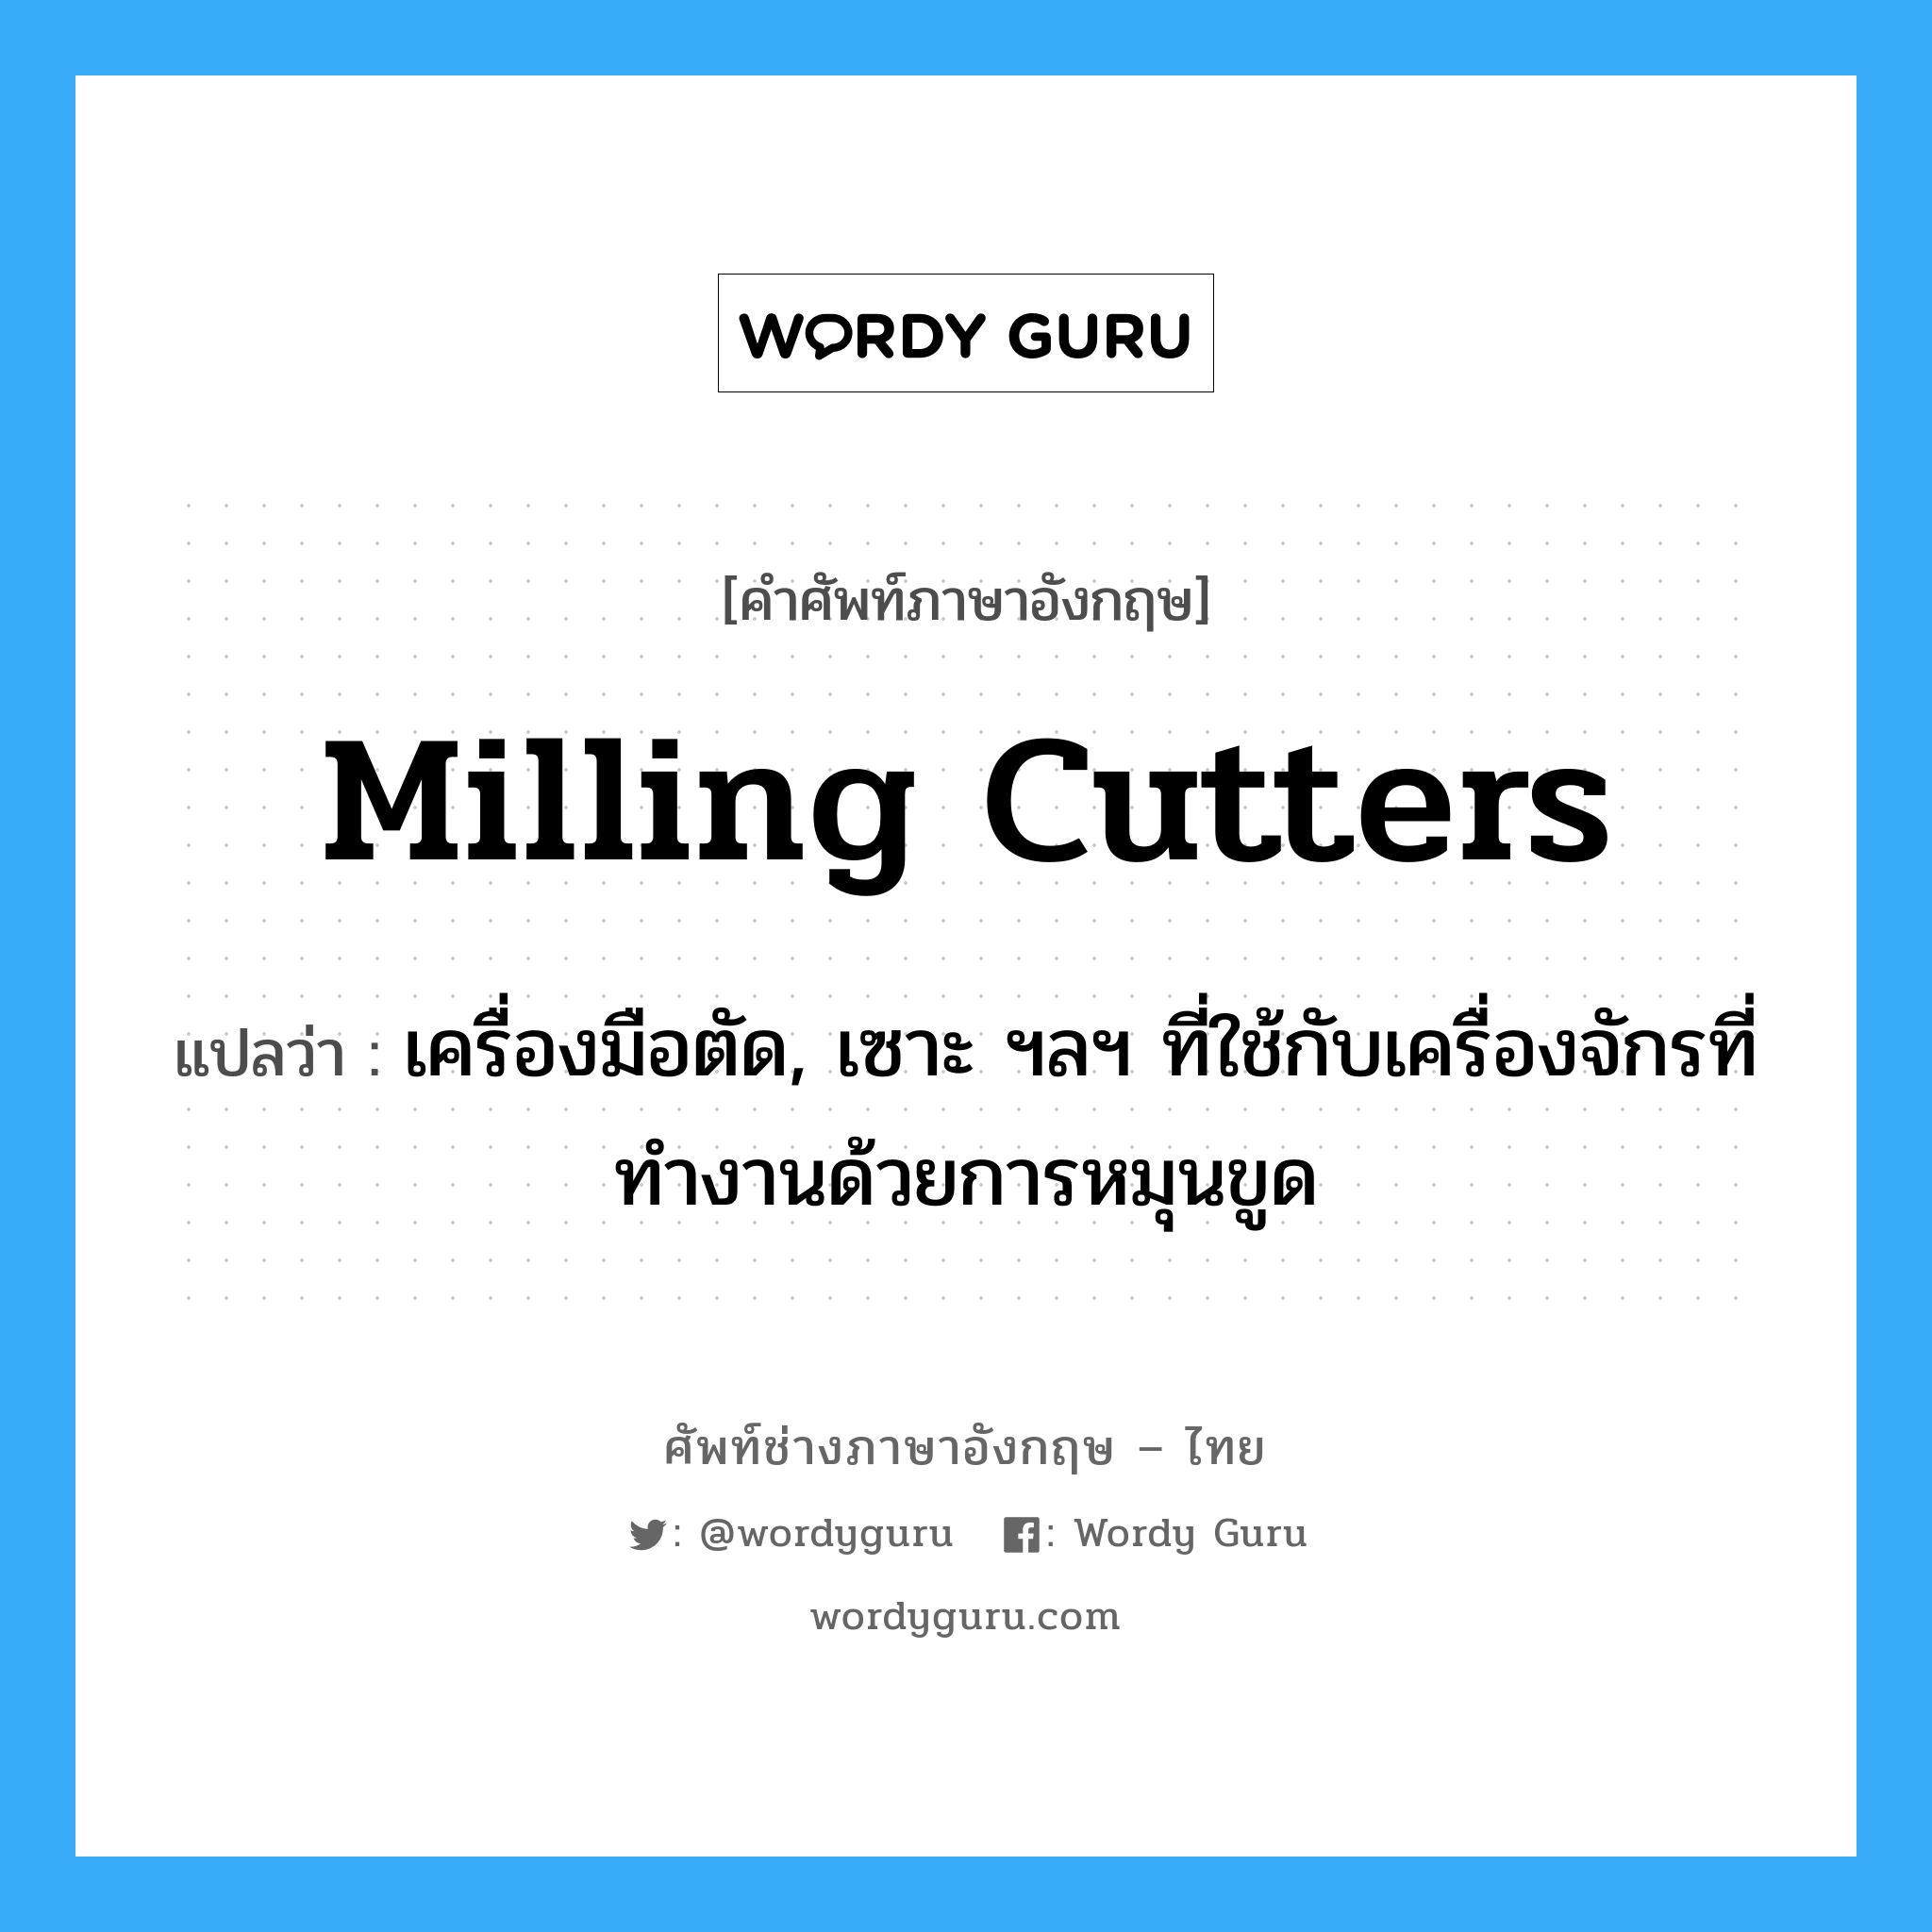 milling cutters แปลว่า?, คำศัพท์ช่างภาษาอังกฤษ - ไทย milling cutters คำศัพท์ภาษาอังกฤษ milling cutters แปลว่า เครื่องมือตัด, เซาะ ฯลฯ ที่ใช้กับเครื่องจักรที่ทำงานด้วยการหมุนขูด